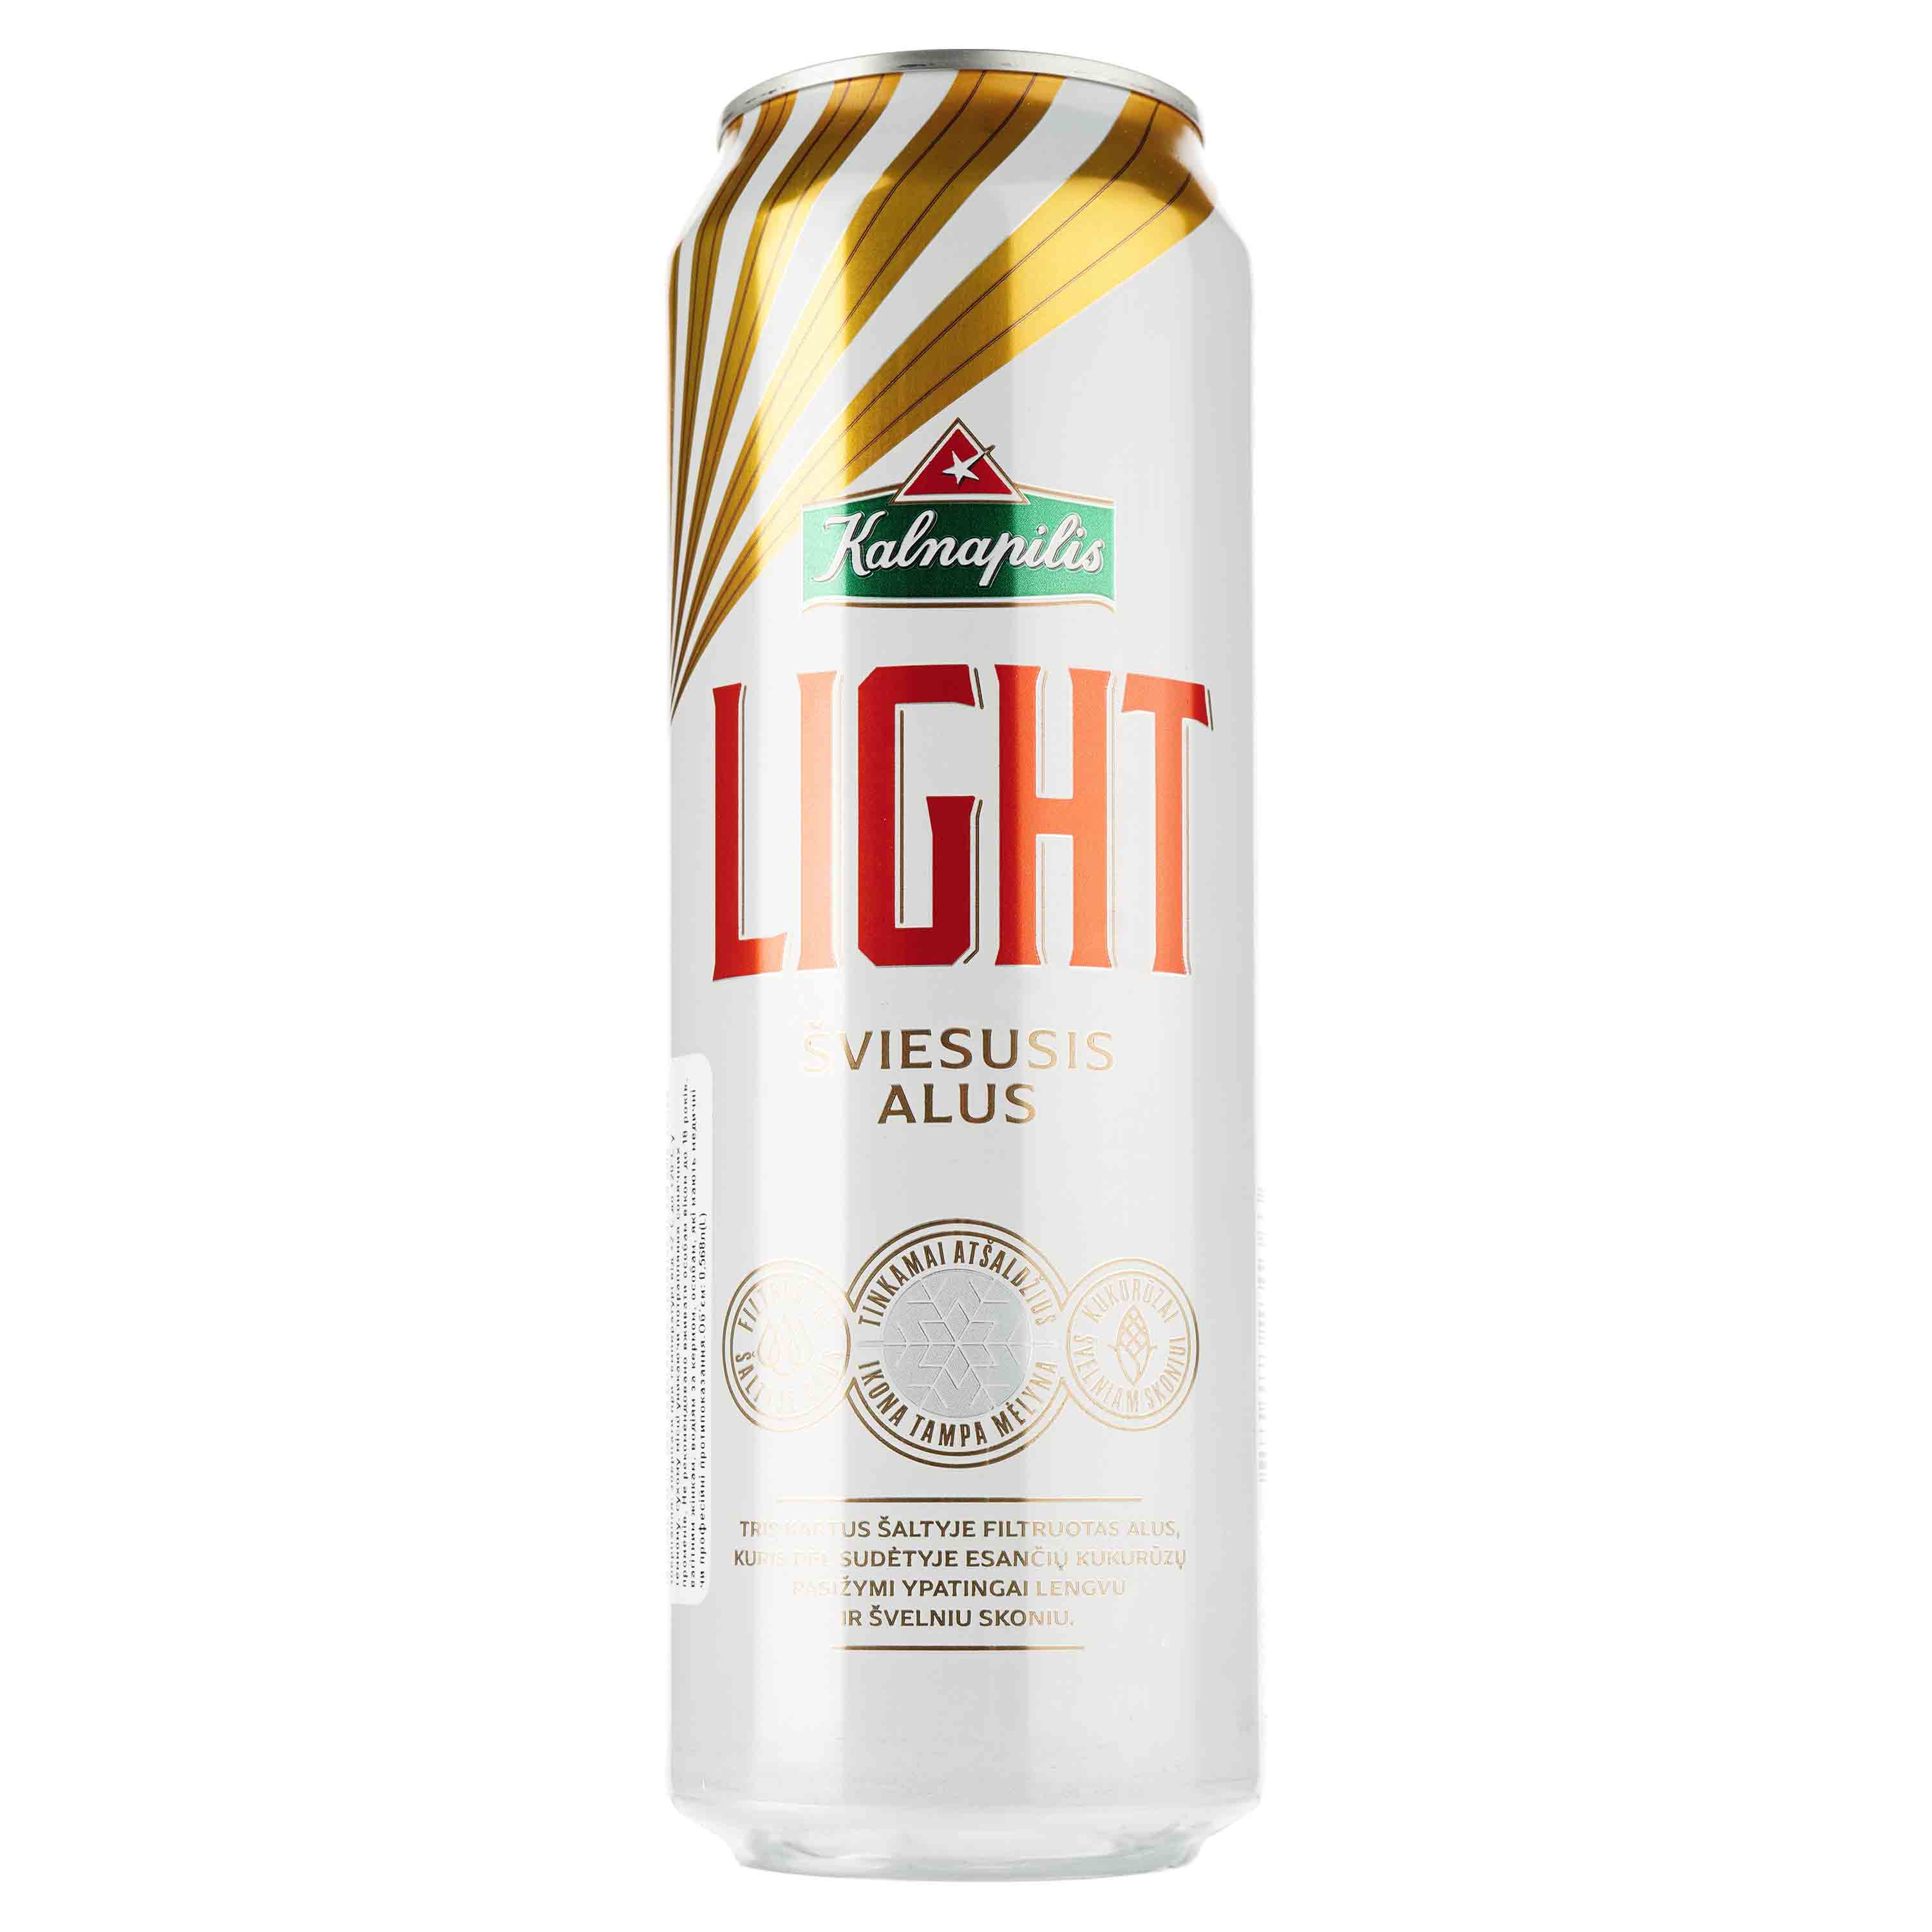 Пиво Kalnapilis Light, світле, фільтроване, 4,7%, з/б, 0,568 л - фото 1